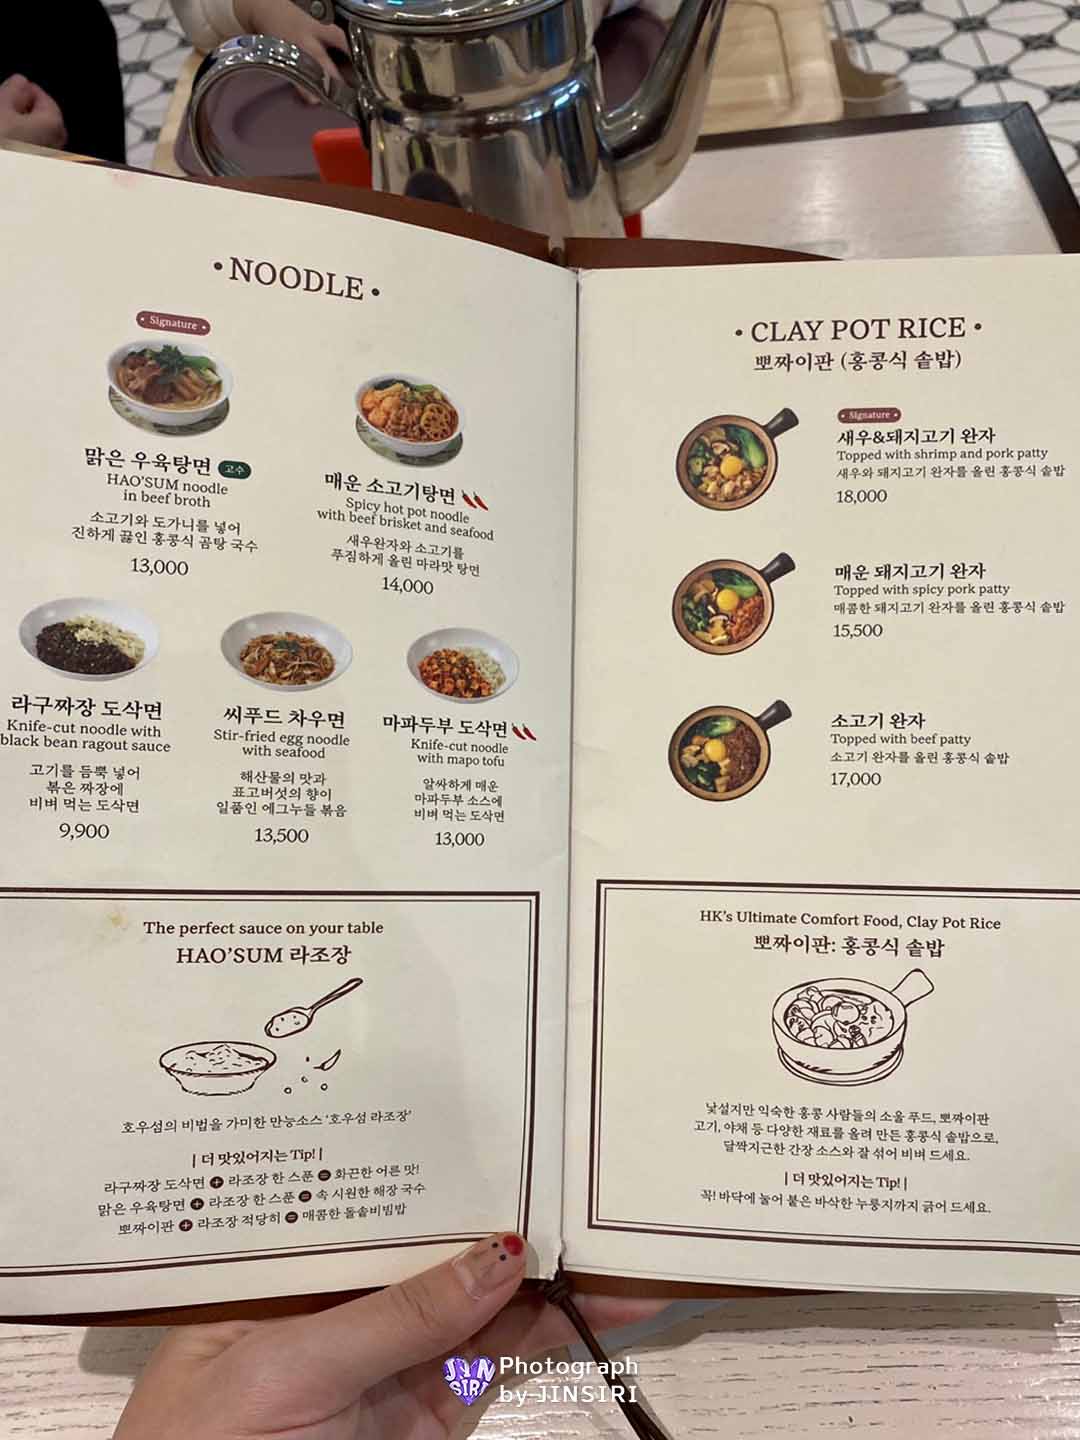 서울 목동 홍콩음식 딤섬 추천 현대백화점 우육탕면